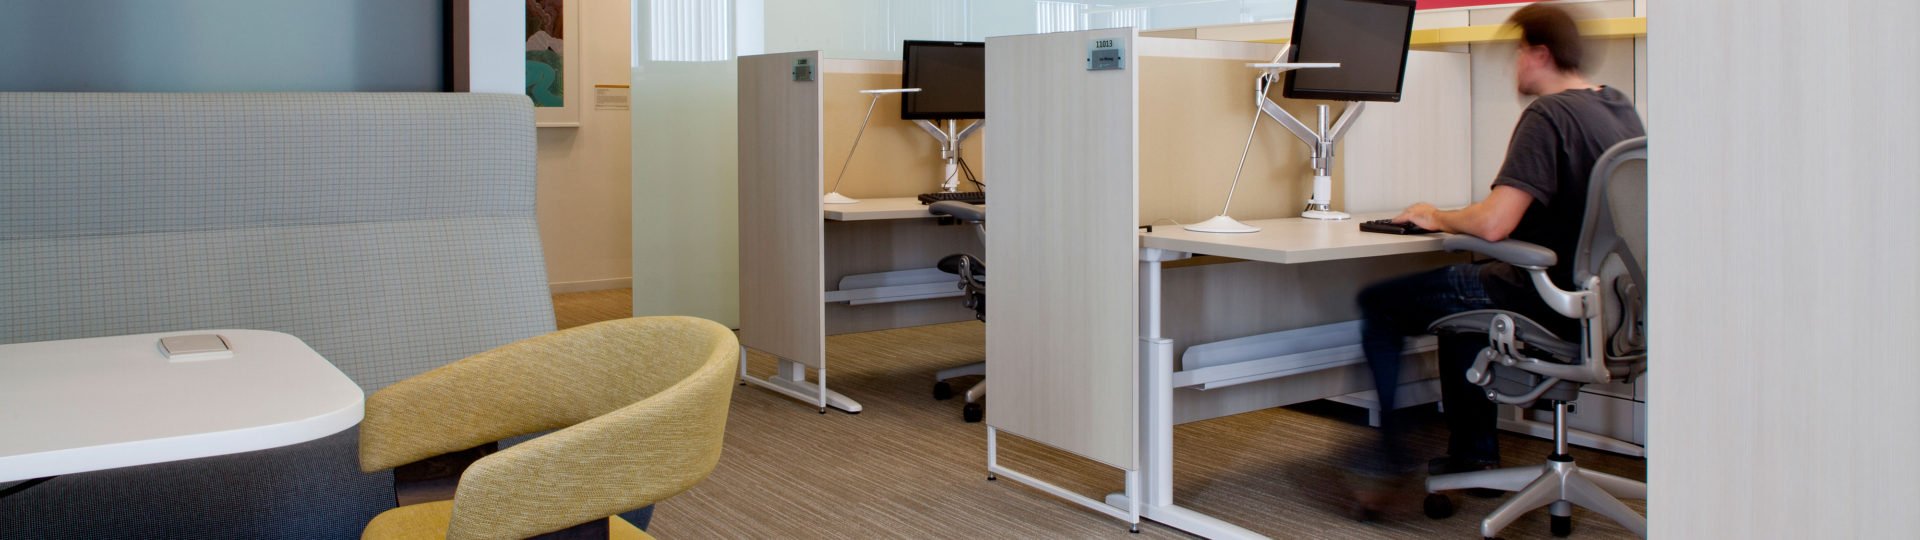 Unite cubicle desk systems by KI